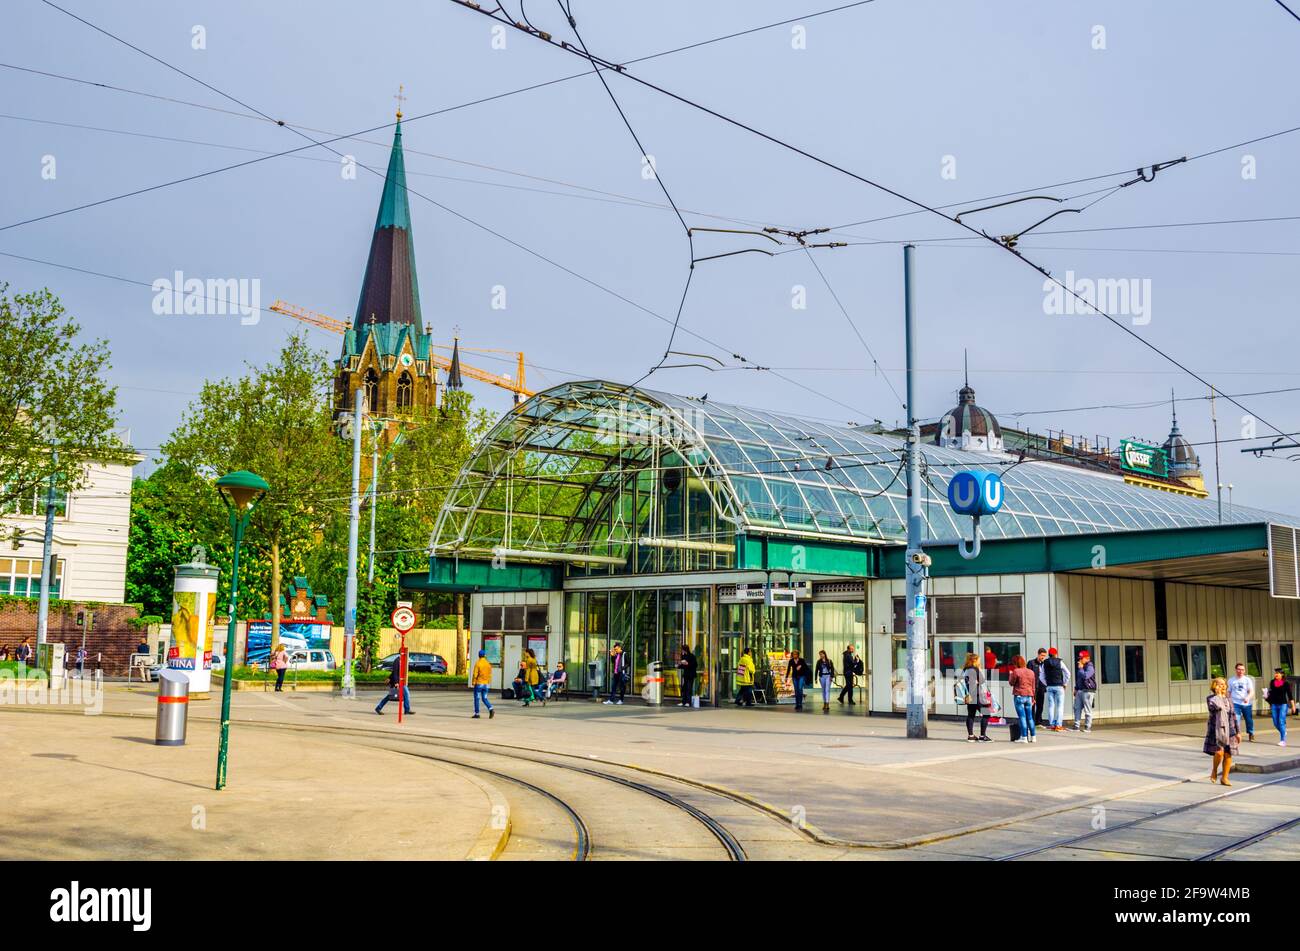 VIENNE, AUTRICHE, 08 JUIN 2015 : les gens attendent un tramway à côté de la station de métro et de tramway Westbahnhof. Banque D'Images